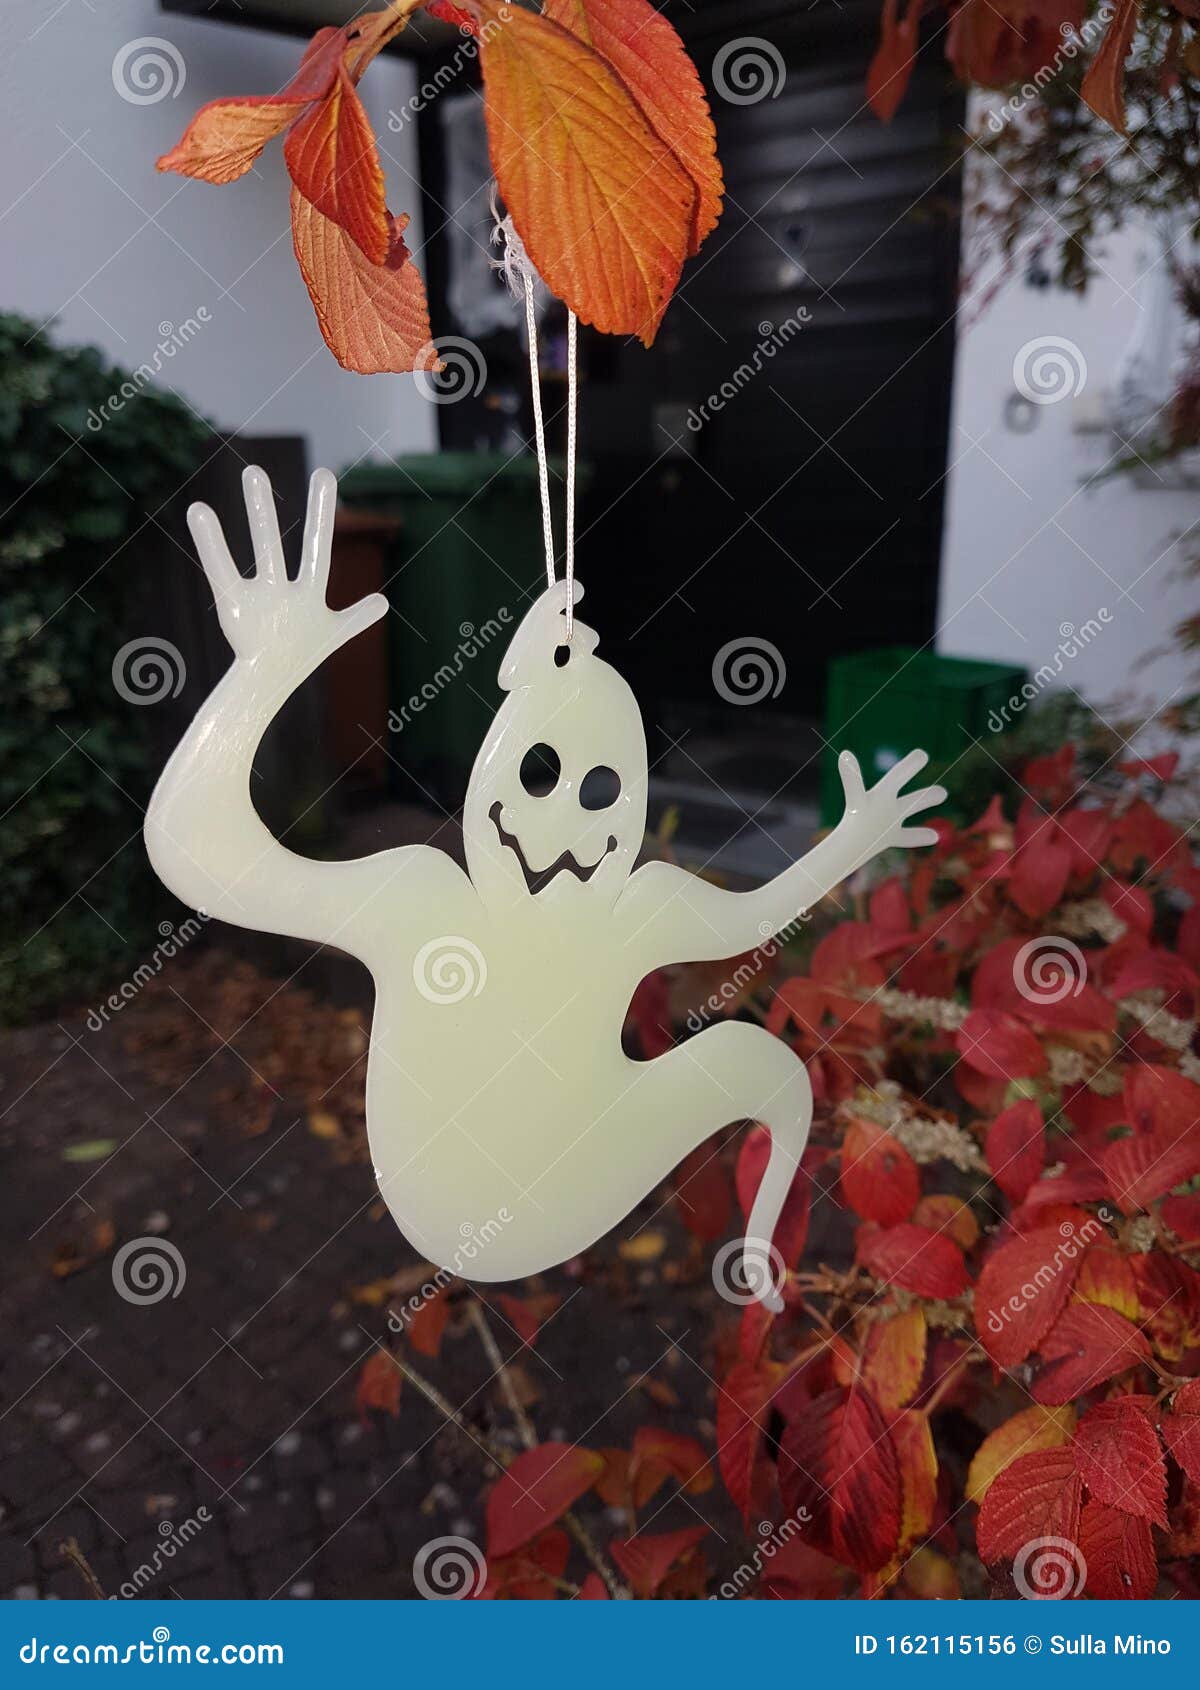 Evaluatie Geen Beschuldiging Halloween Decoratie in De Tuin Stock Foto - Image of eend, beige: 162115156